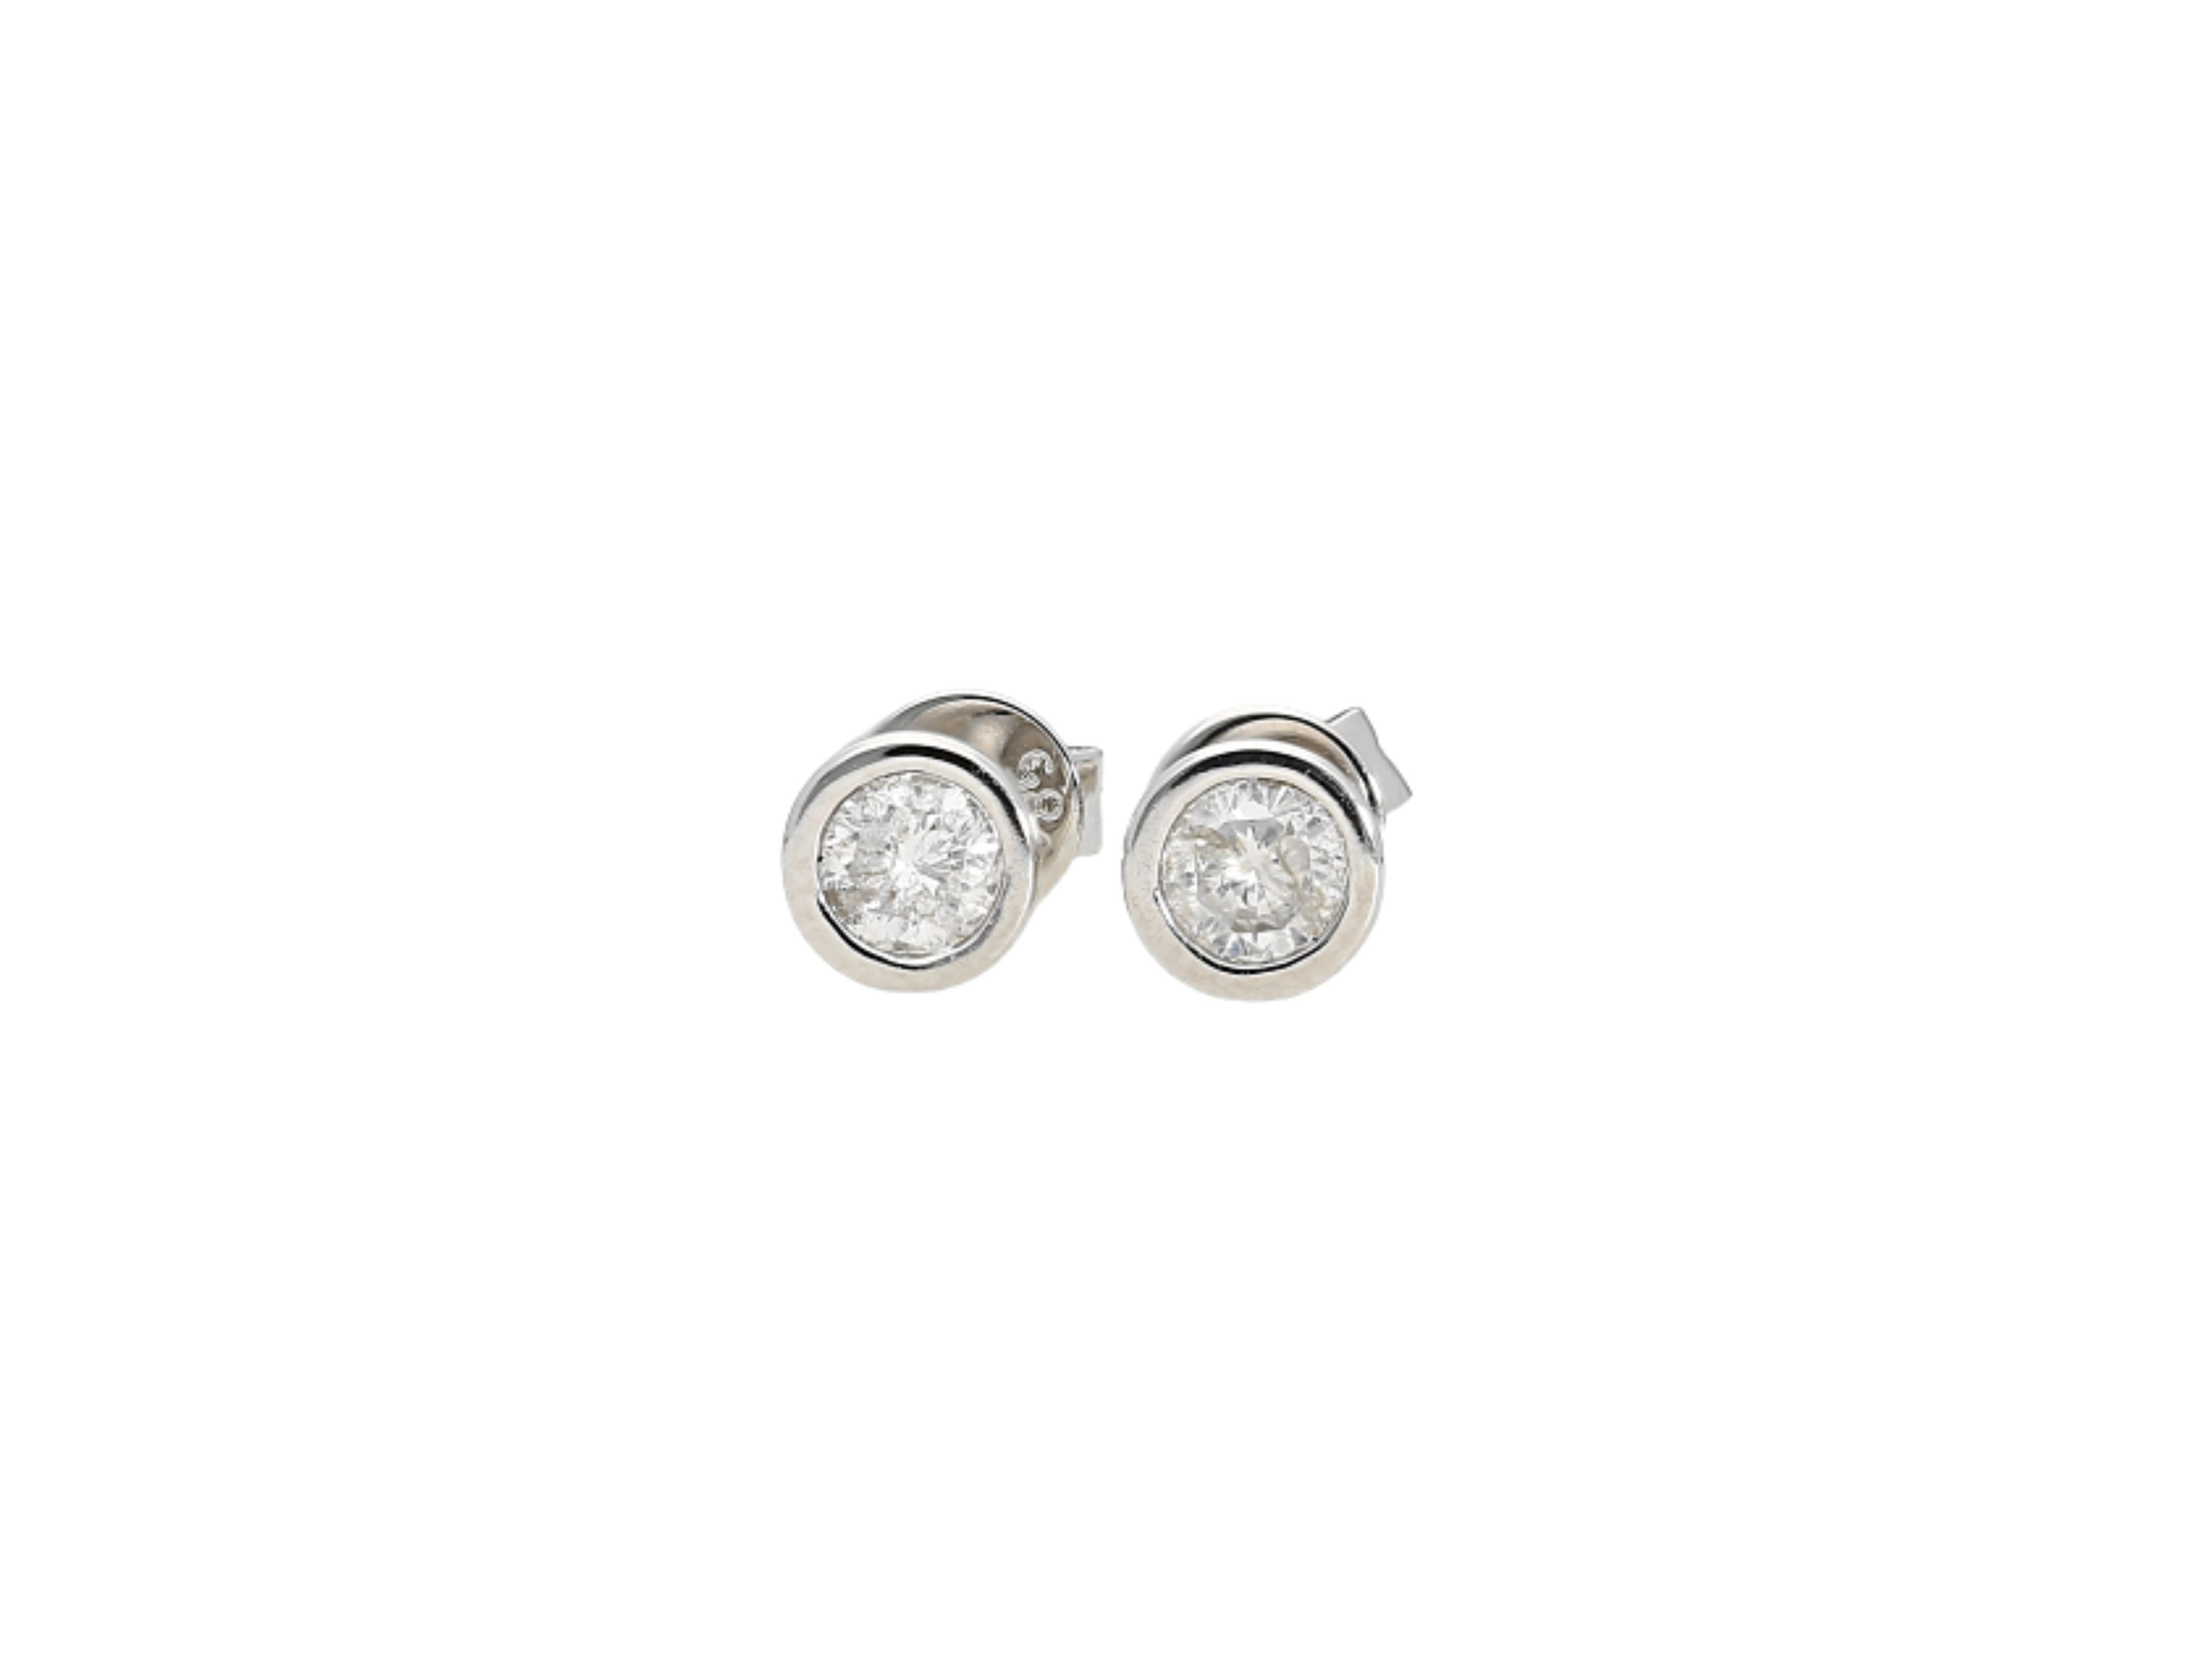 3 CTTW Bezel Set Natural Diamond Stud Earrings in 14k White Gold | 3.5 MM-Earrings-ASSAY